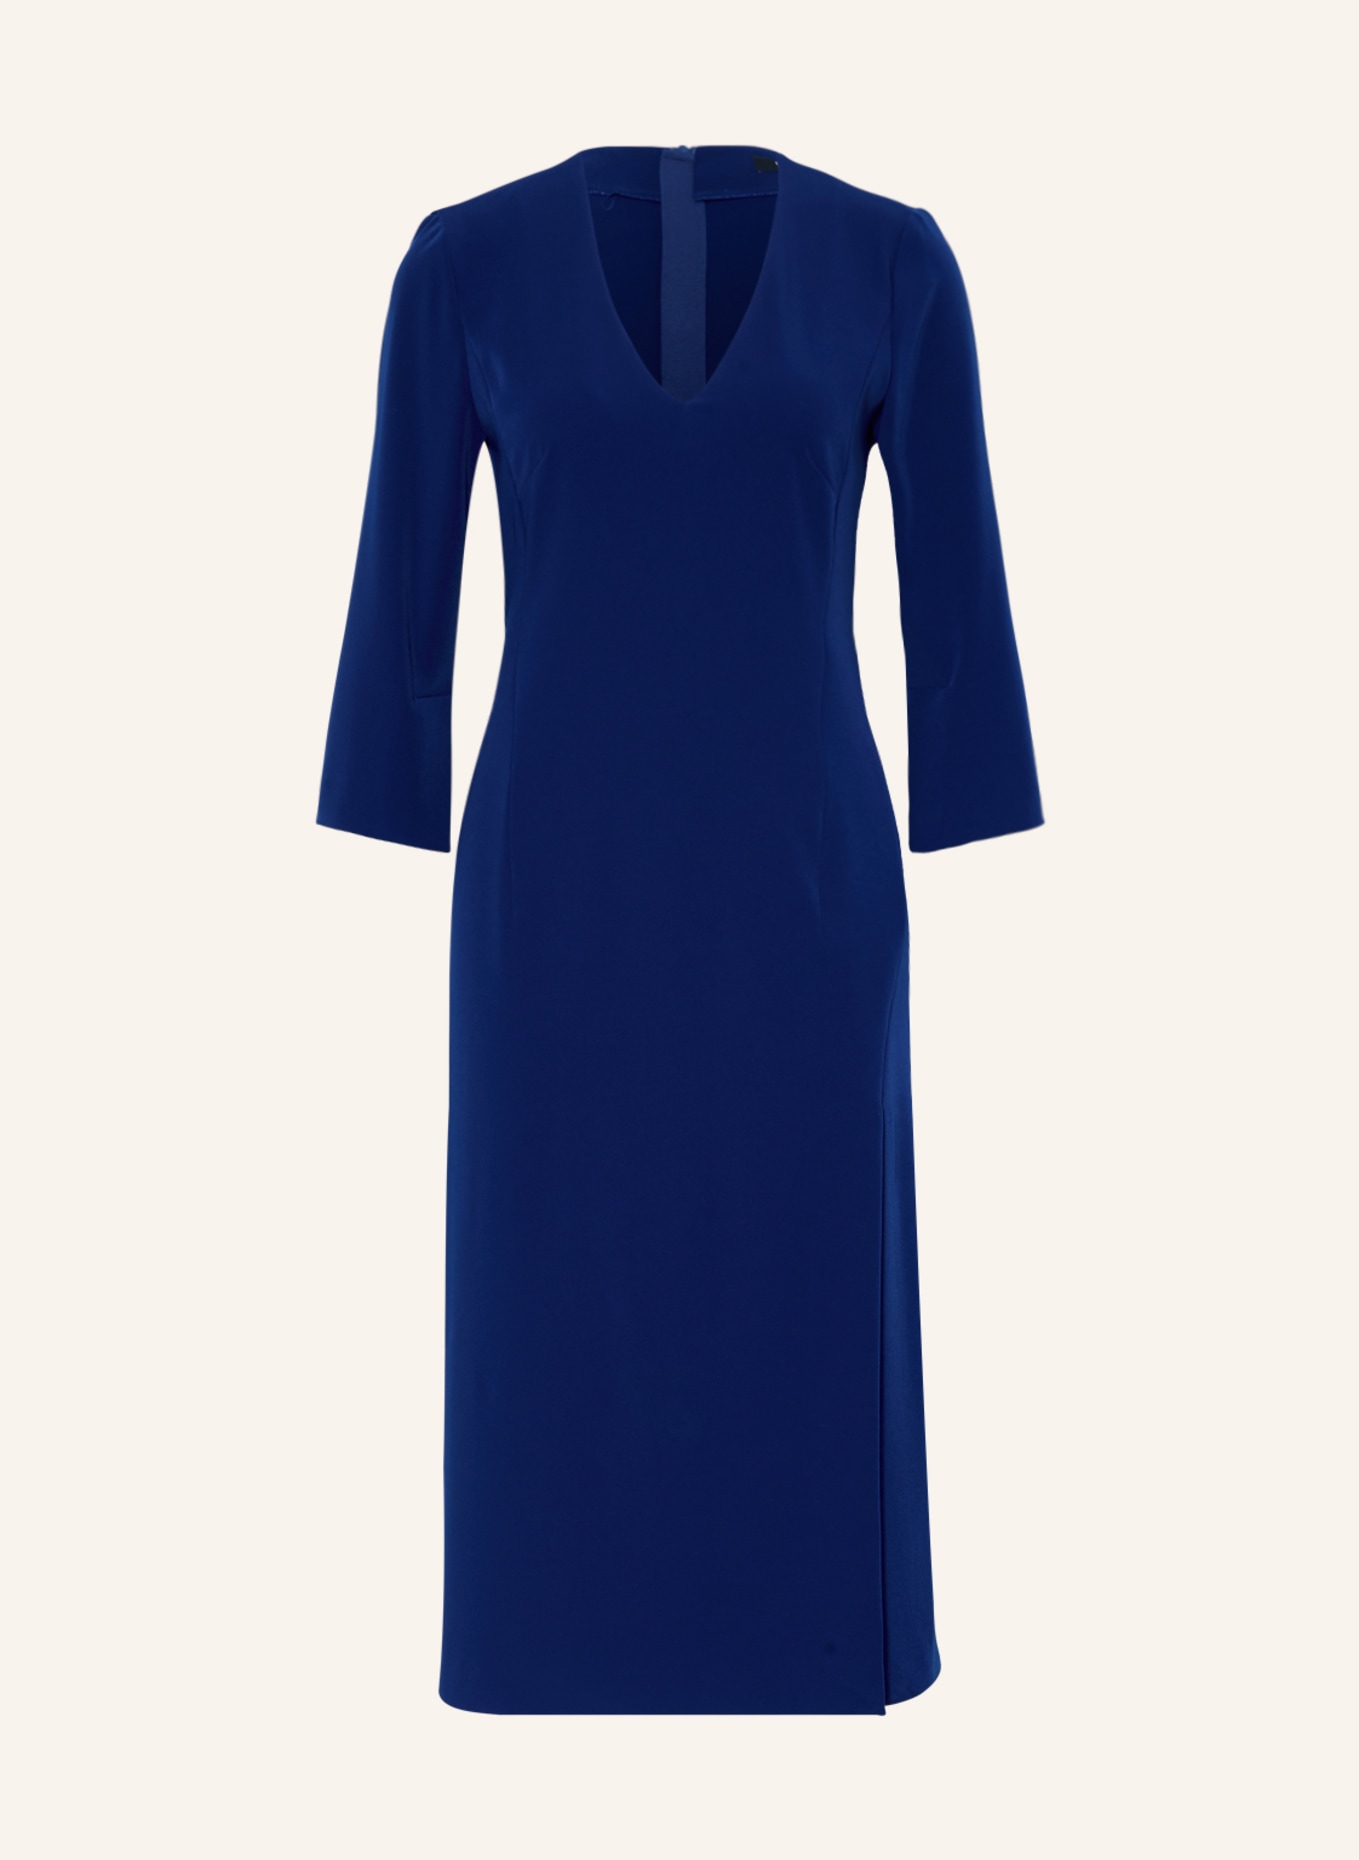 RIANI Kleid mit 3/4-Arm, Farbe: BLAU (Bild 1)